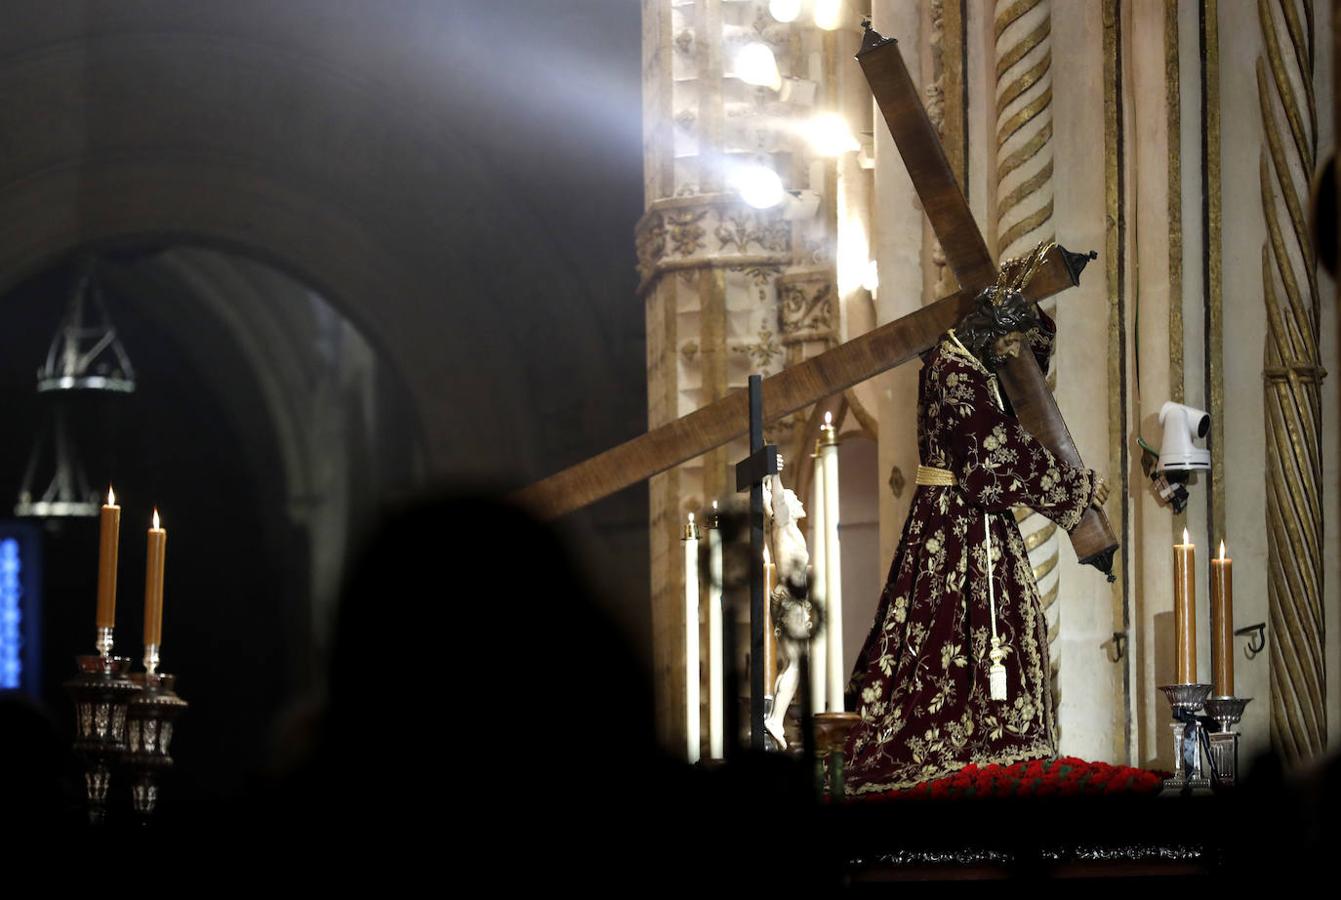 El Vía Crucis de las cofradías de Córdoba, en imágenes